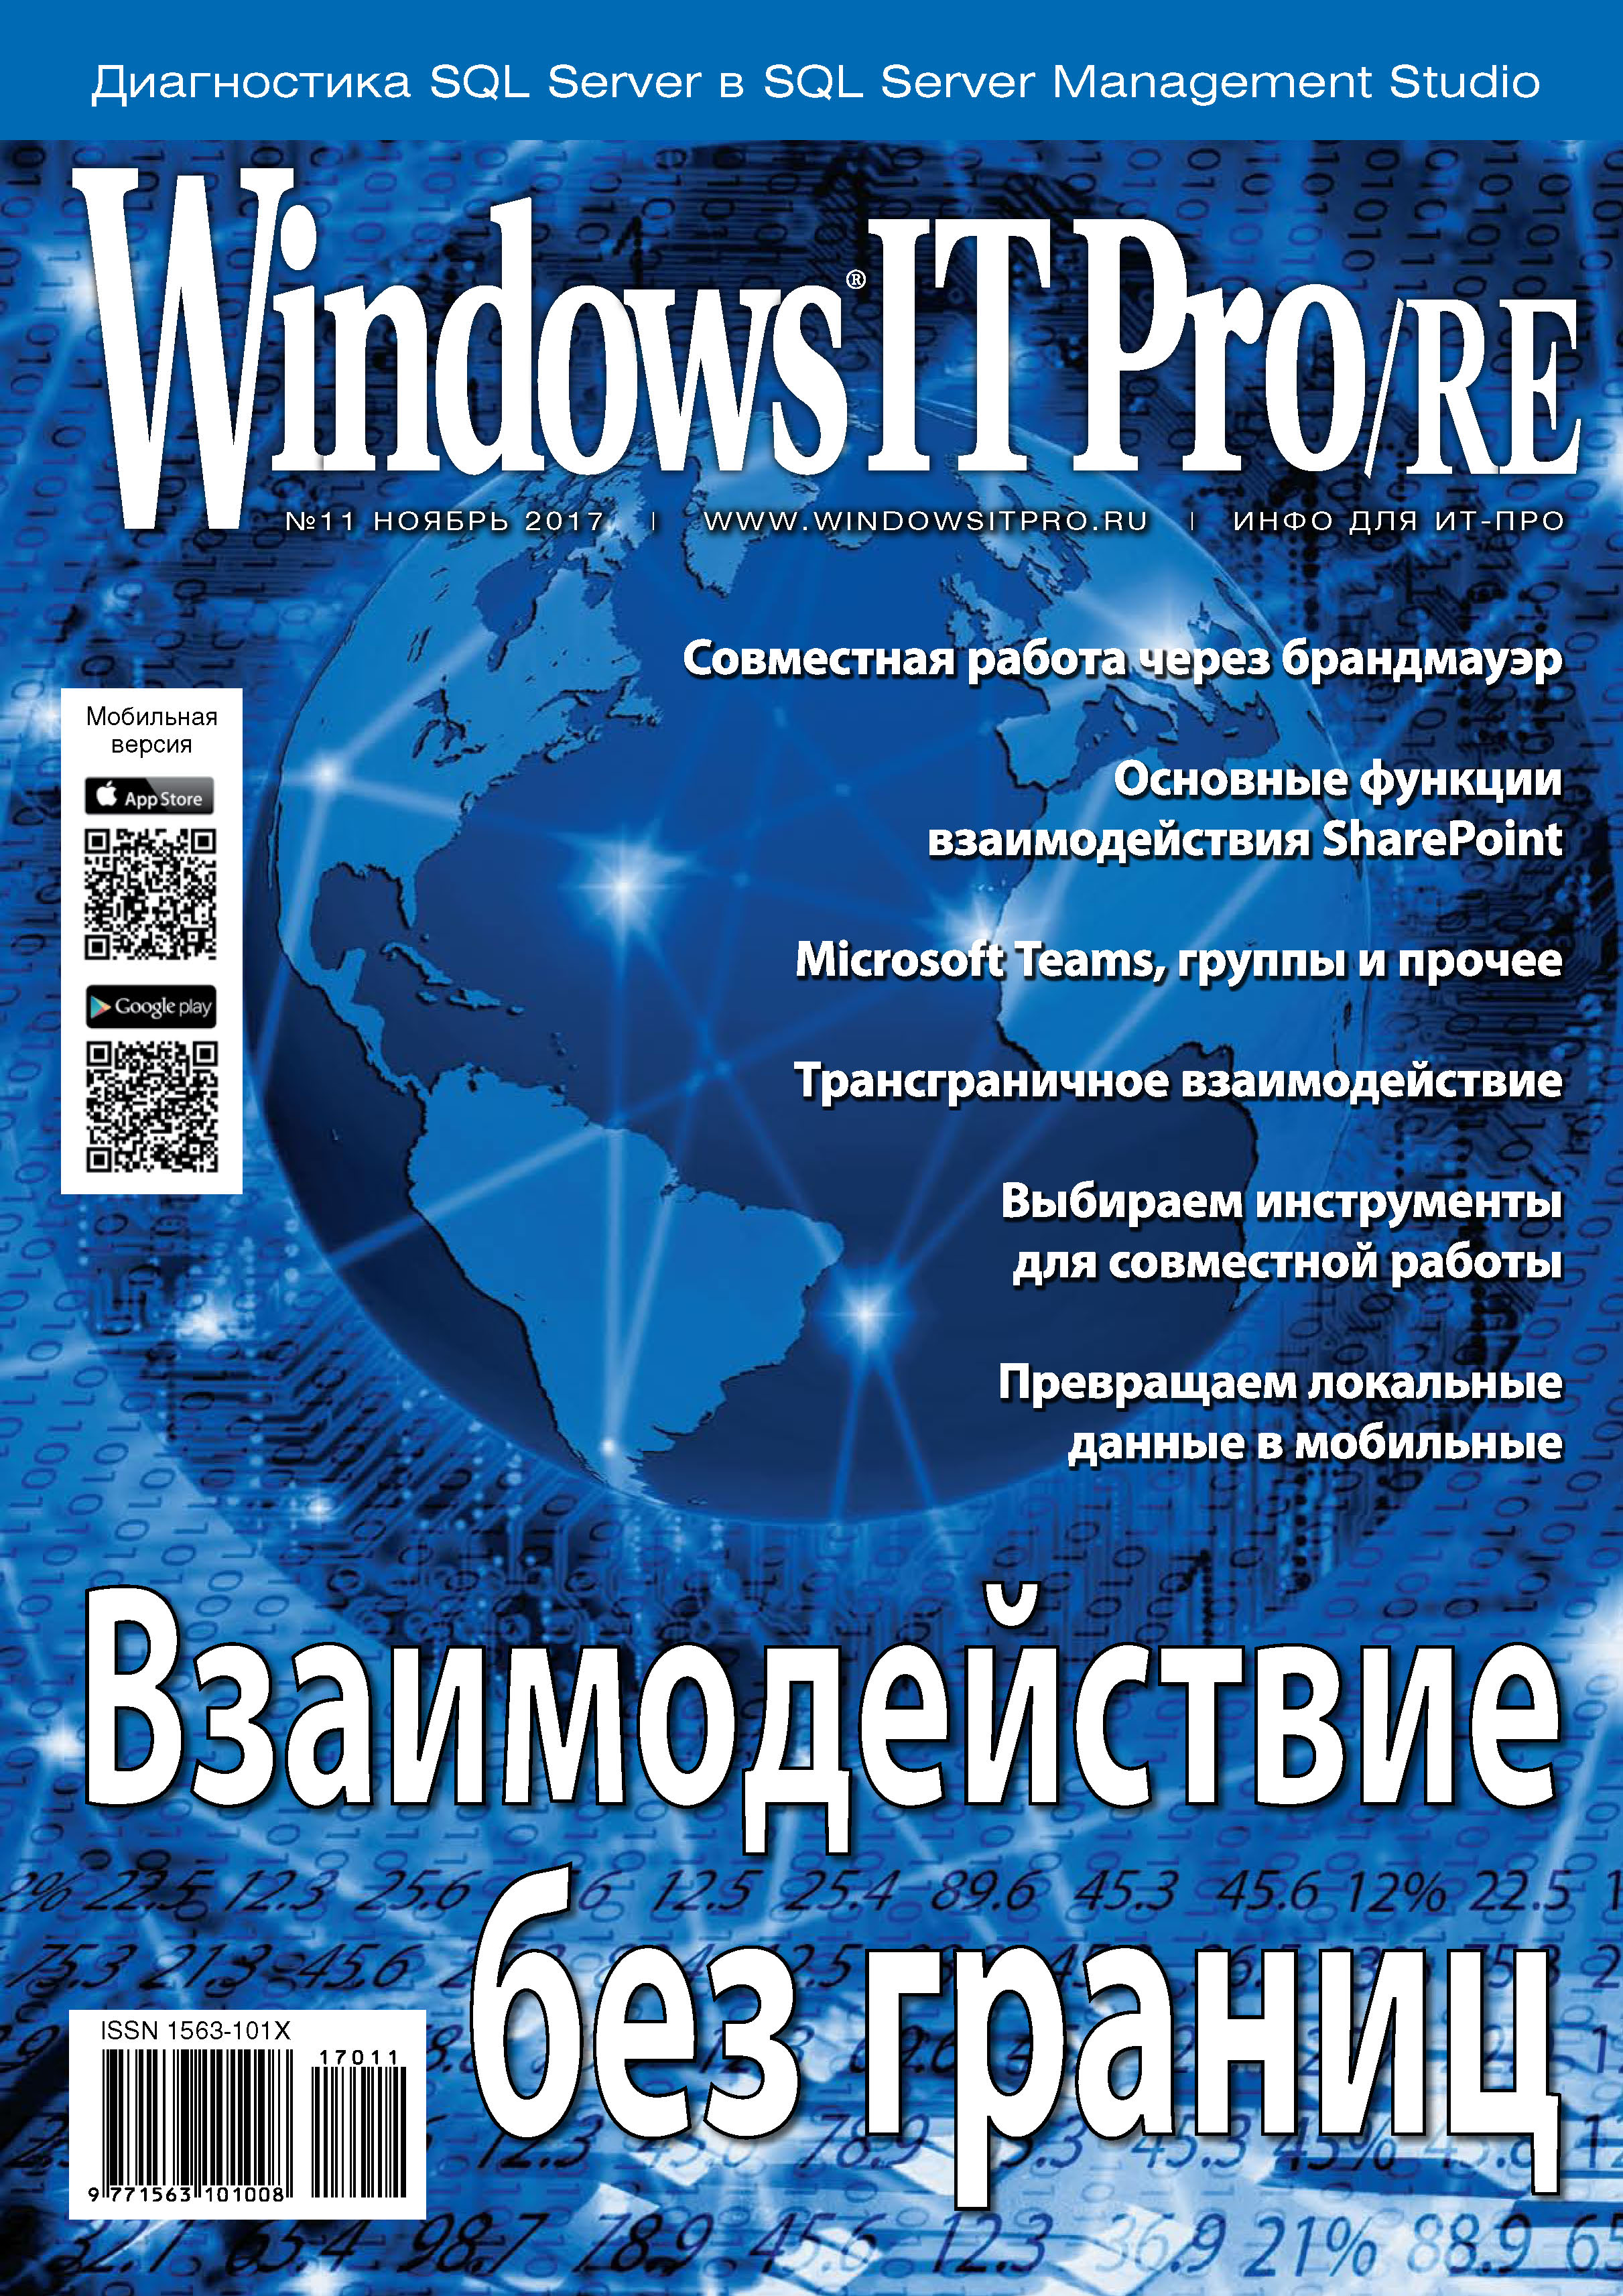 Windows IT Pro/RE№11/2017